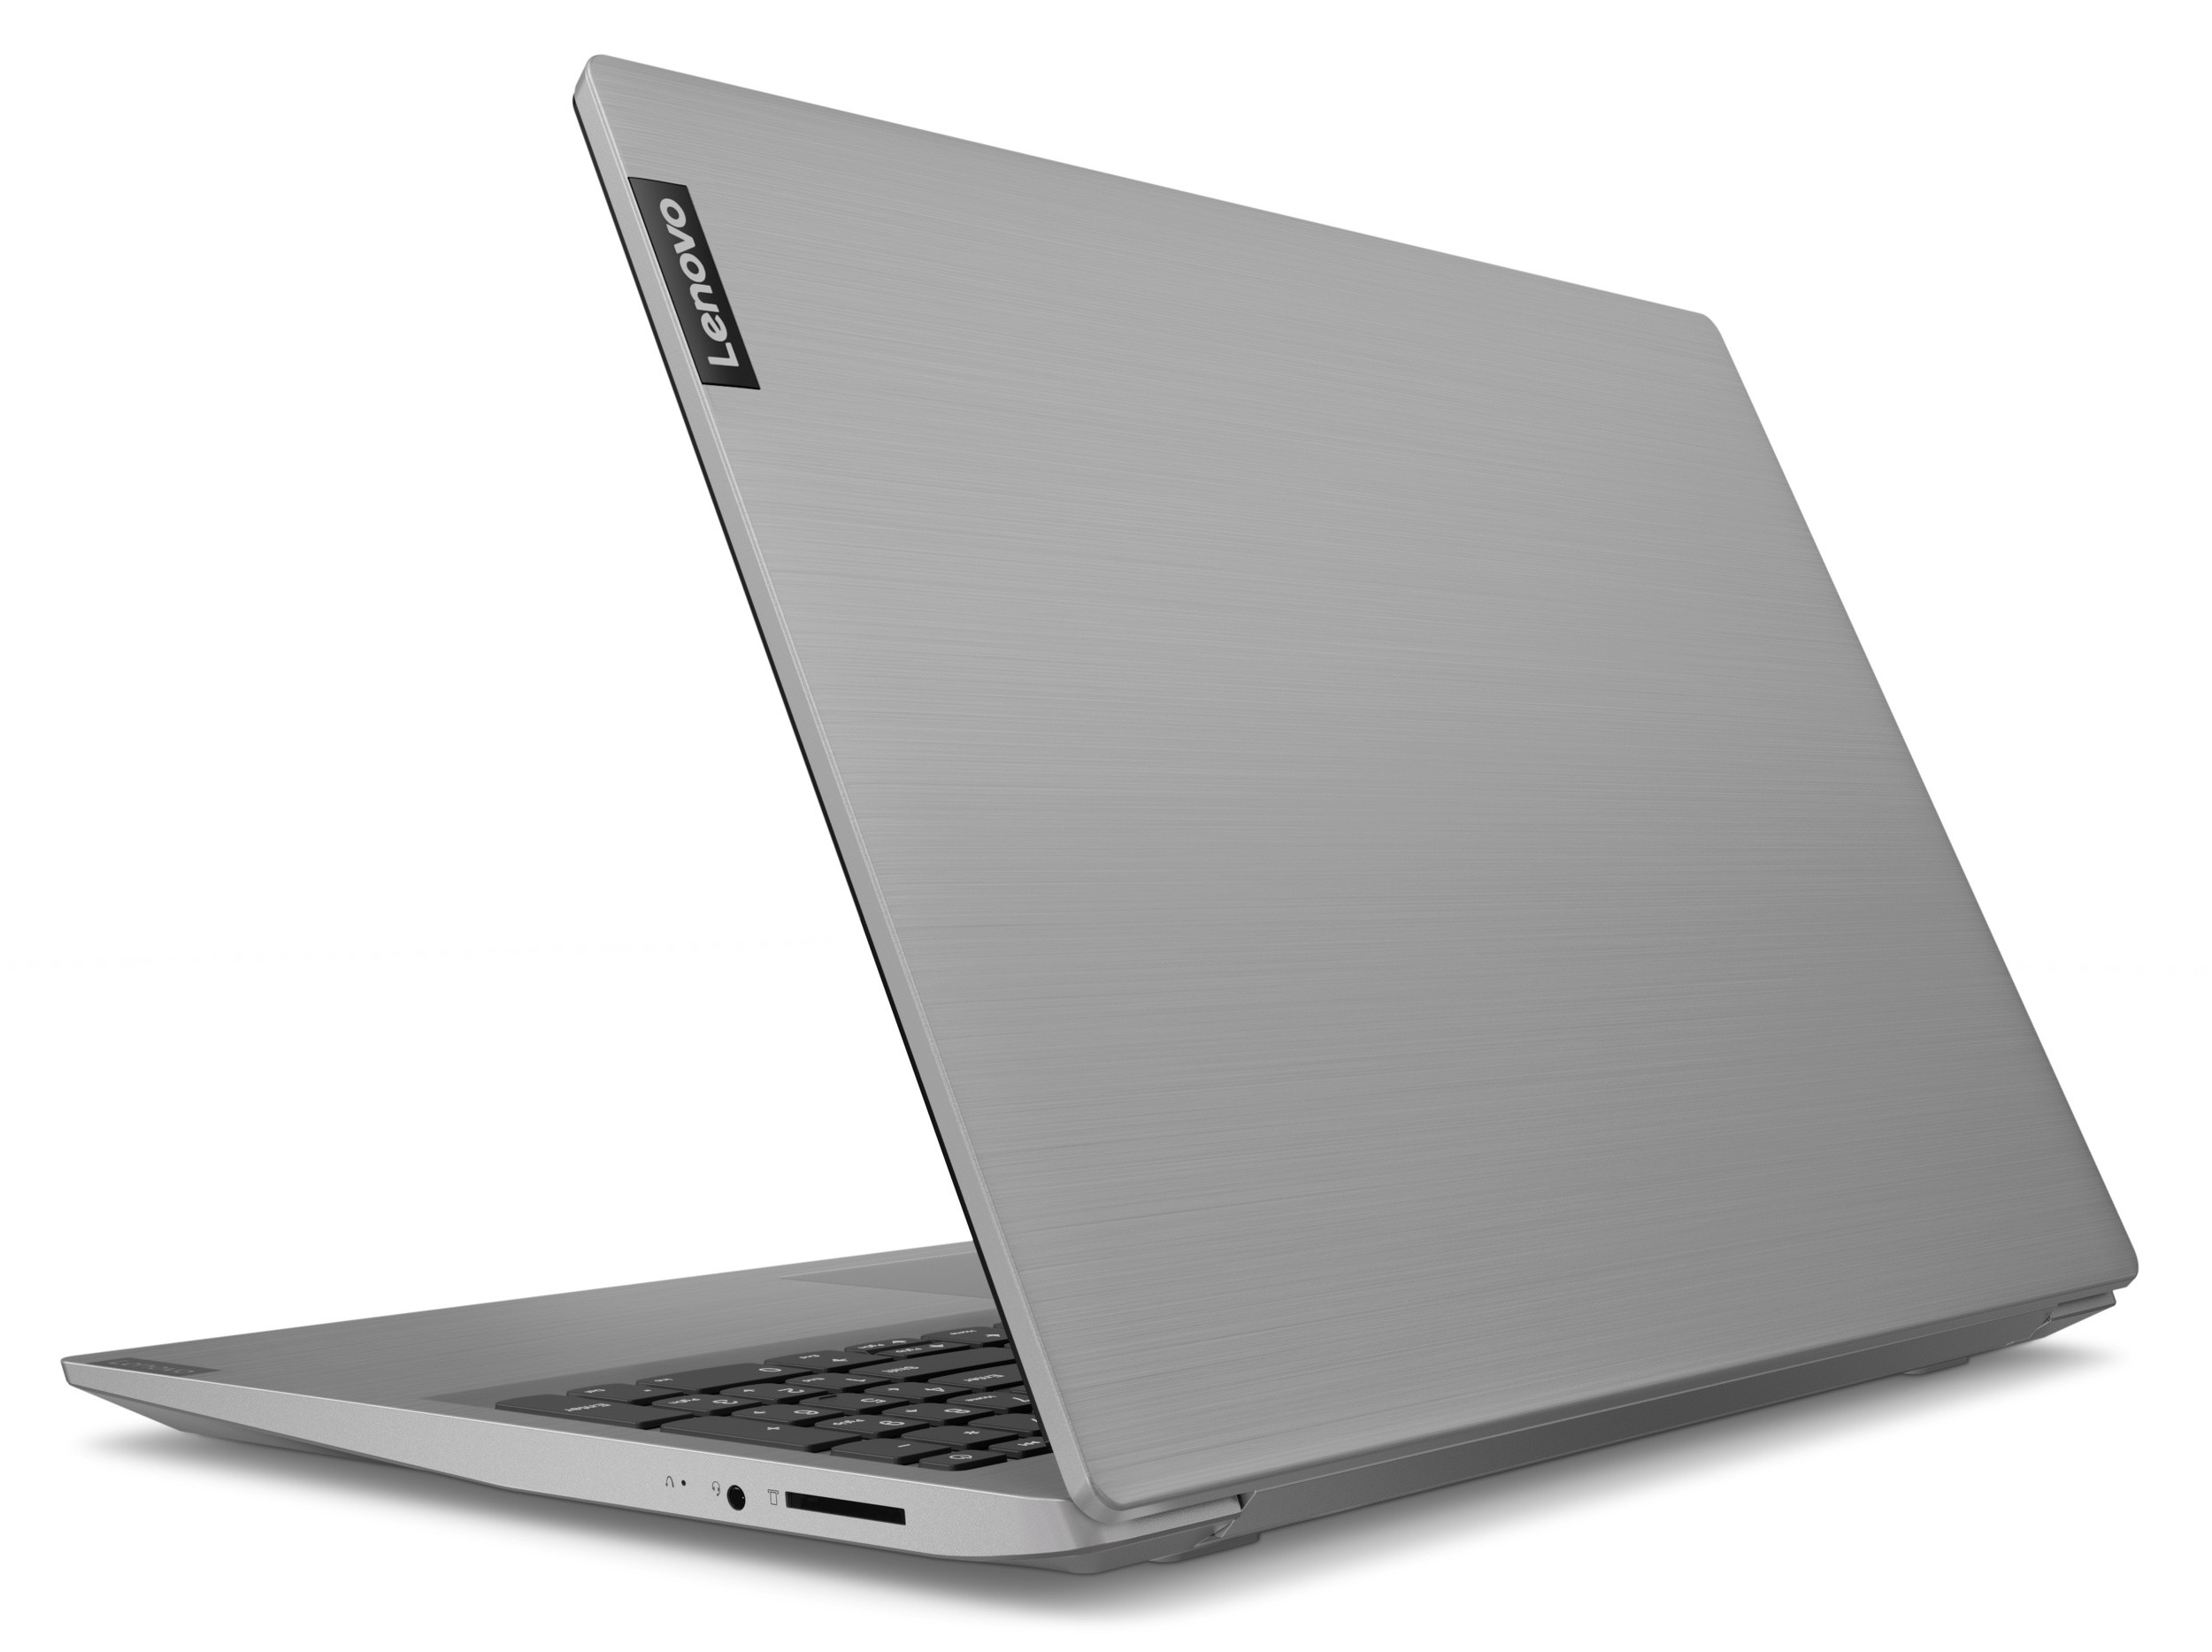 Ноутбук Леново Ideapad S145 15api Цена